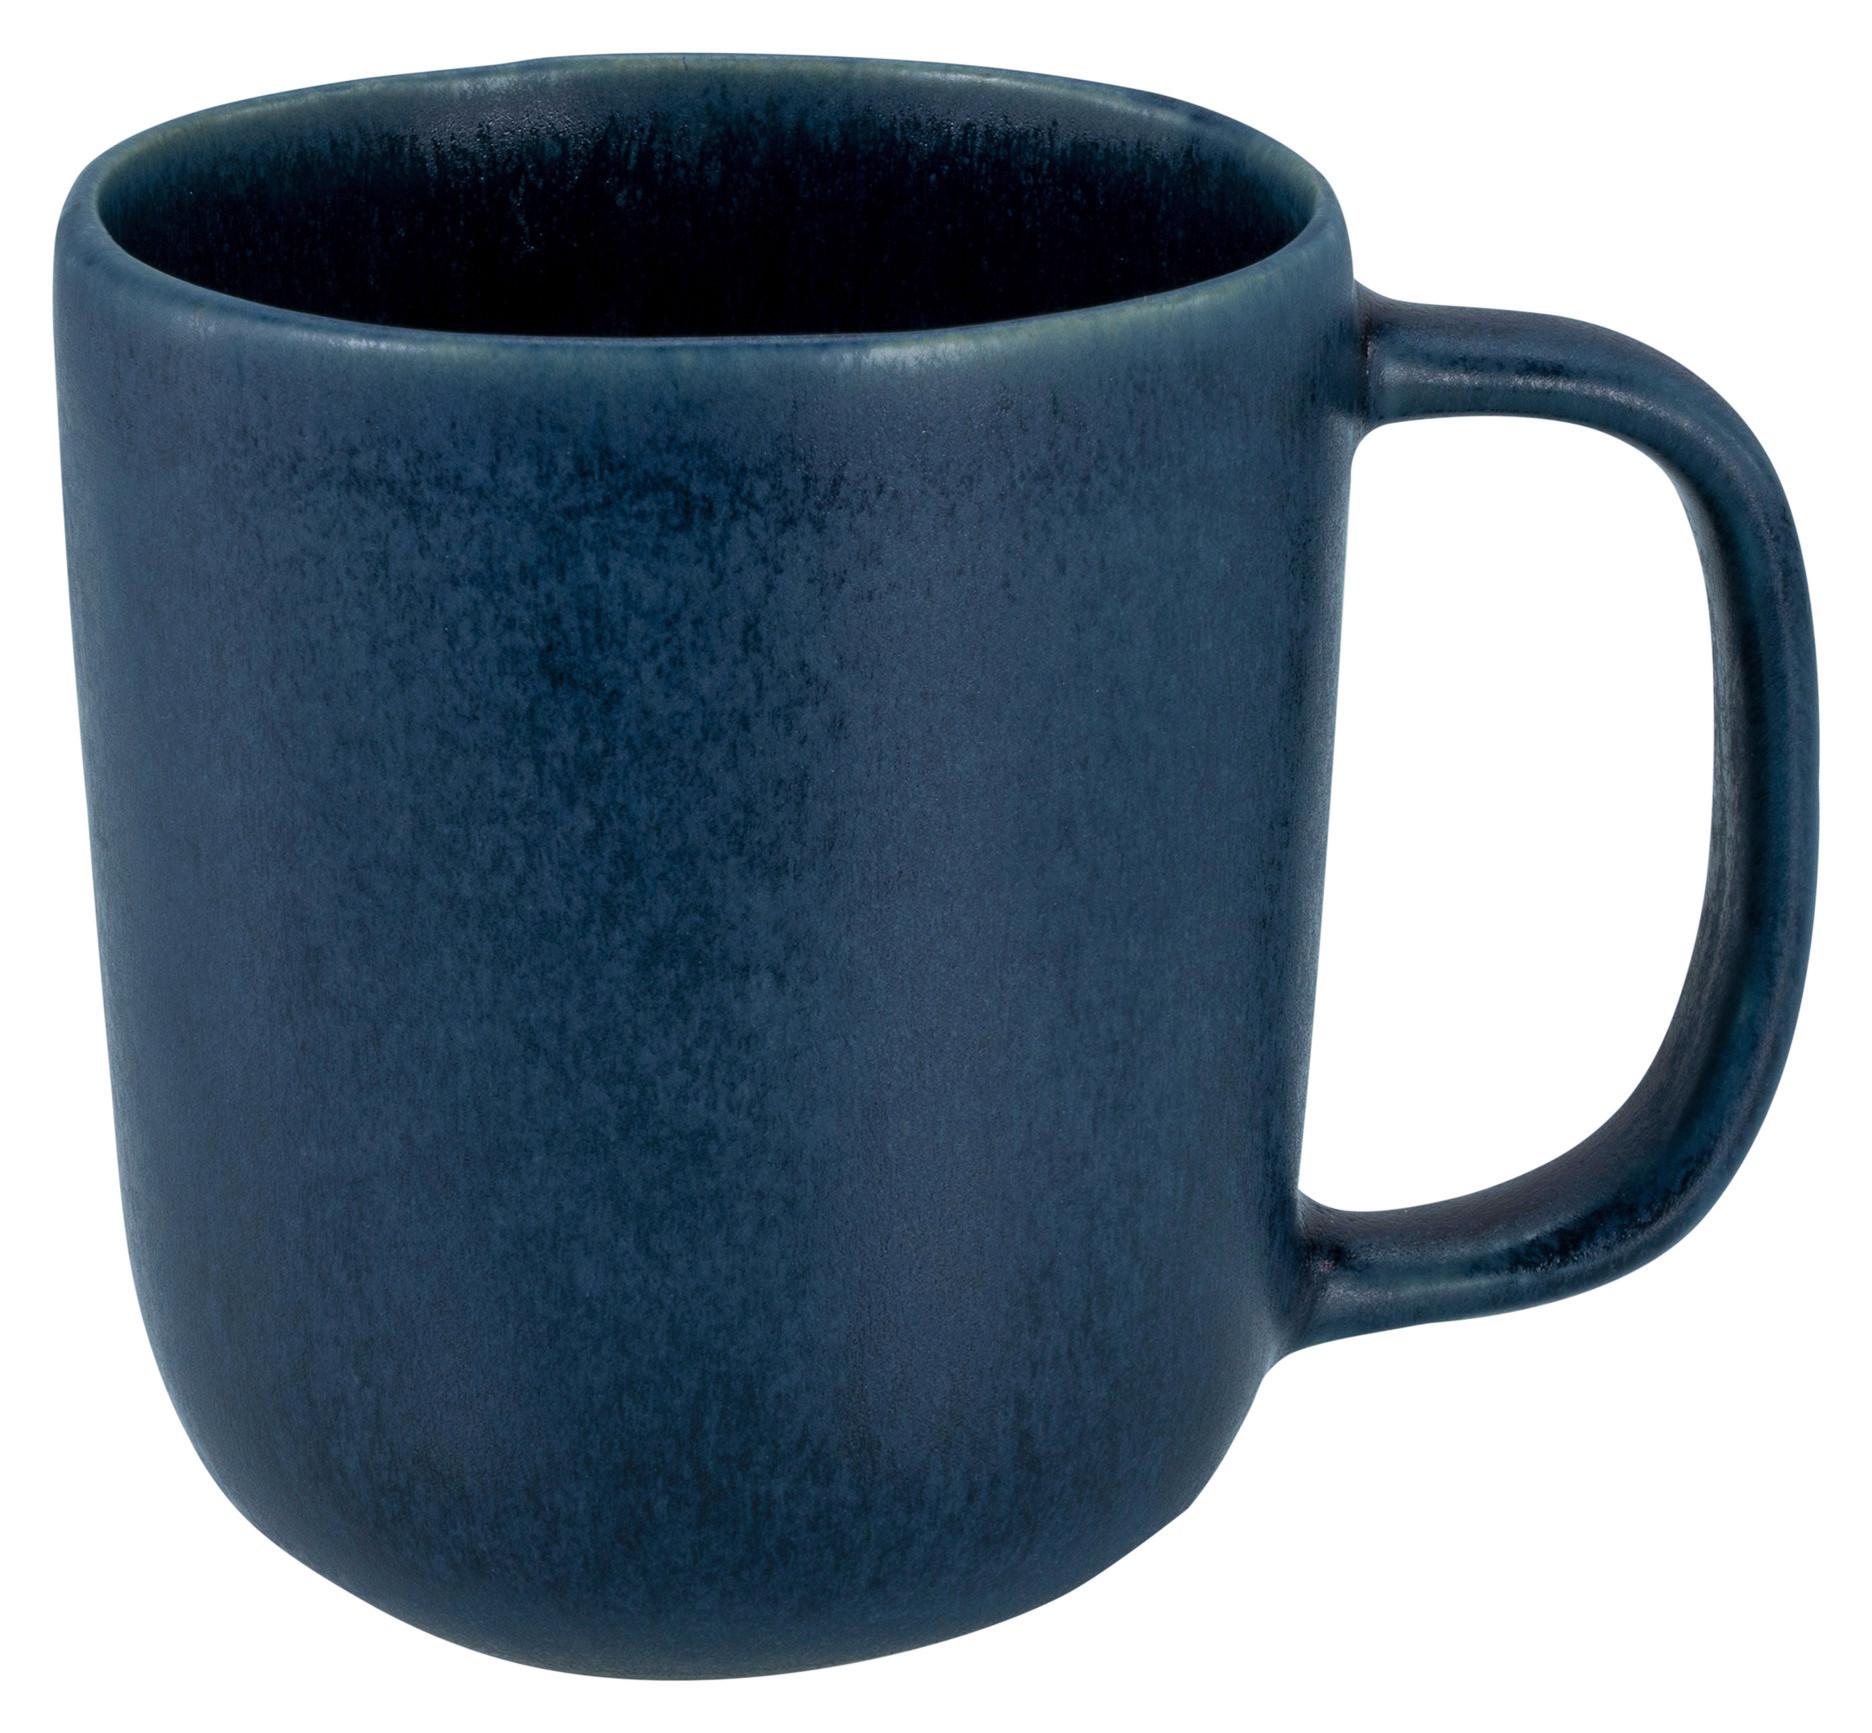 Hrnek Na Kávu Gourmet, 300ml - modrá, Moderní, keramika (12/8/10,5cm) - Premium Living